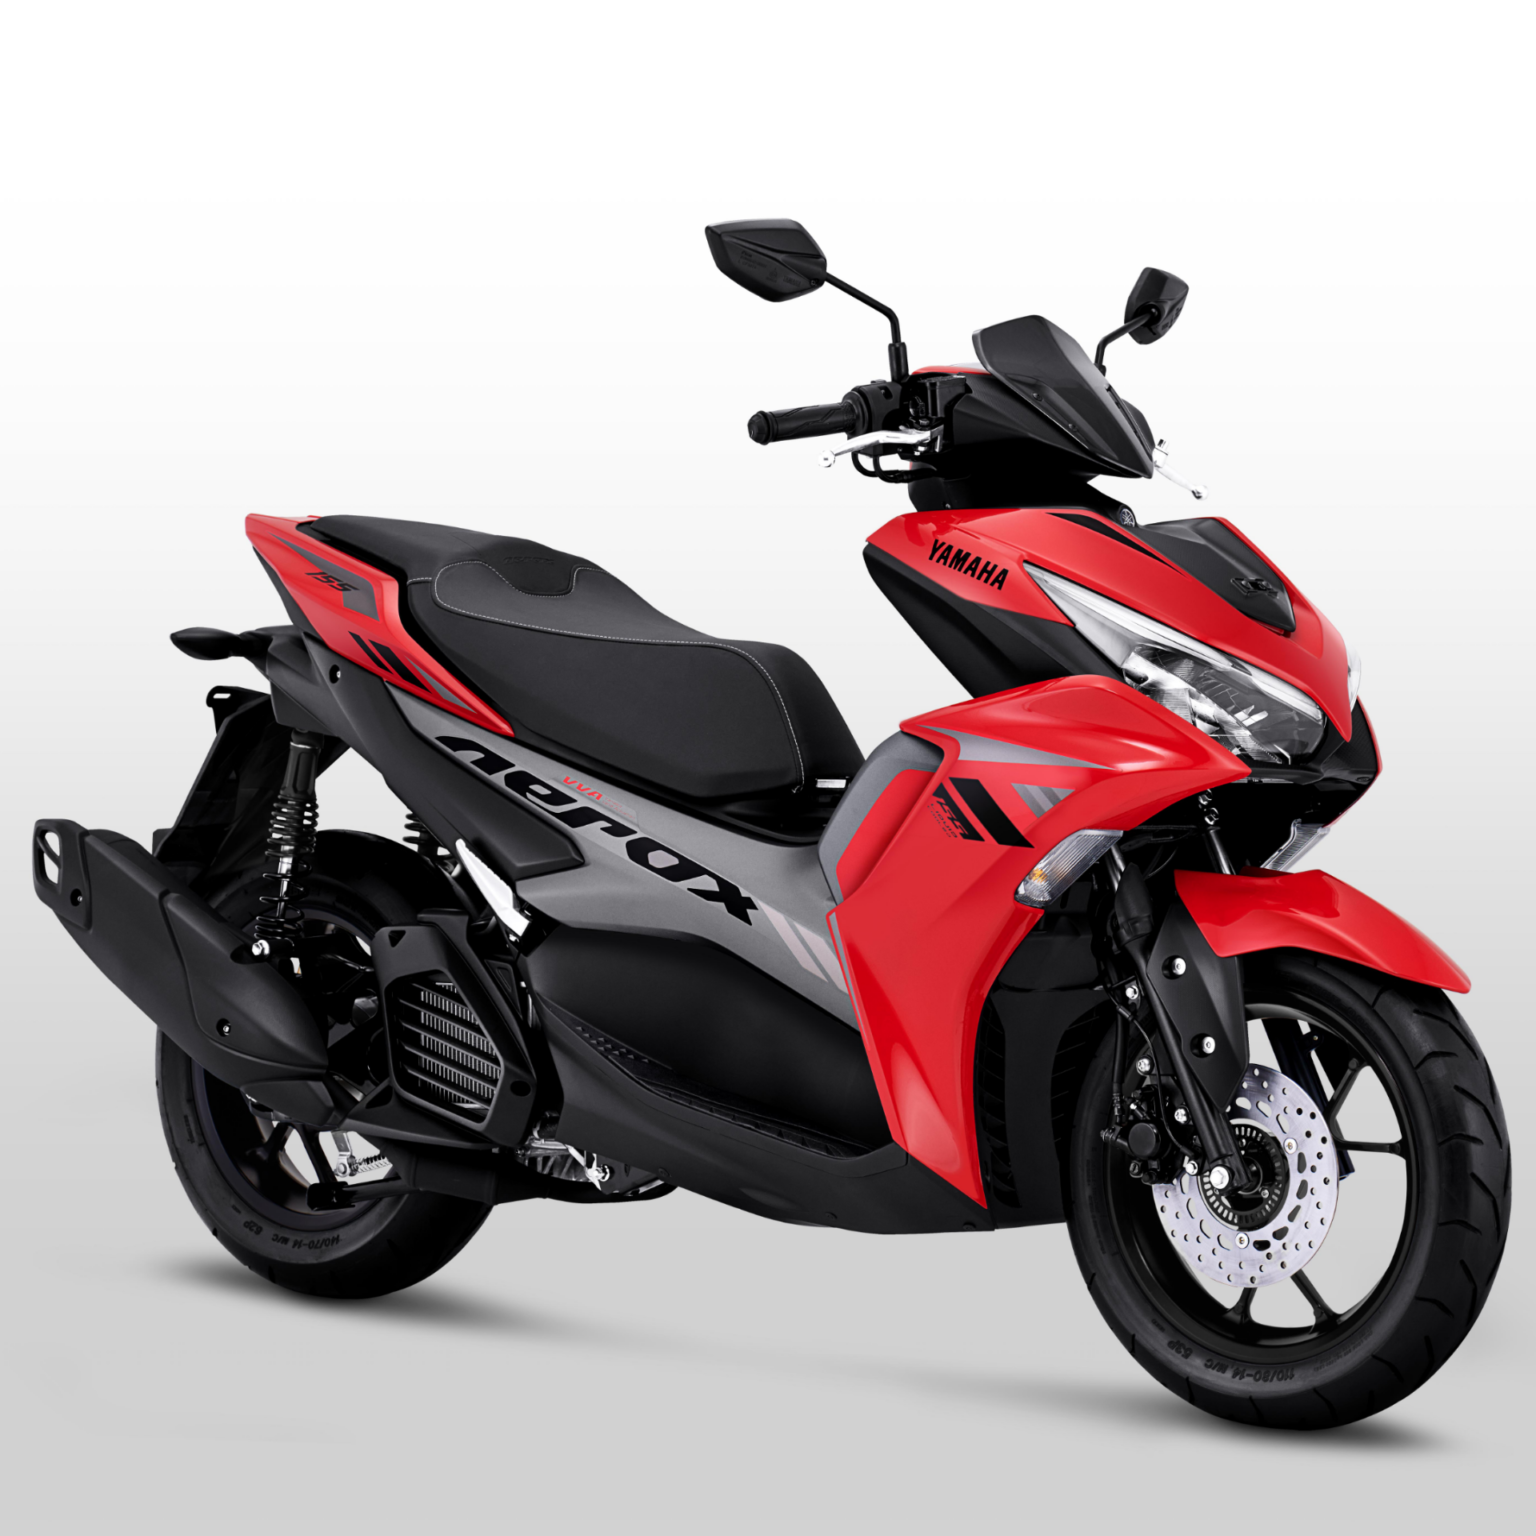 Spesifikasi & Warna All New Yamaha Aerox 155 2021 Harga Rp. 25.5 Juta